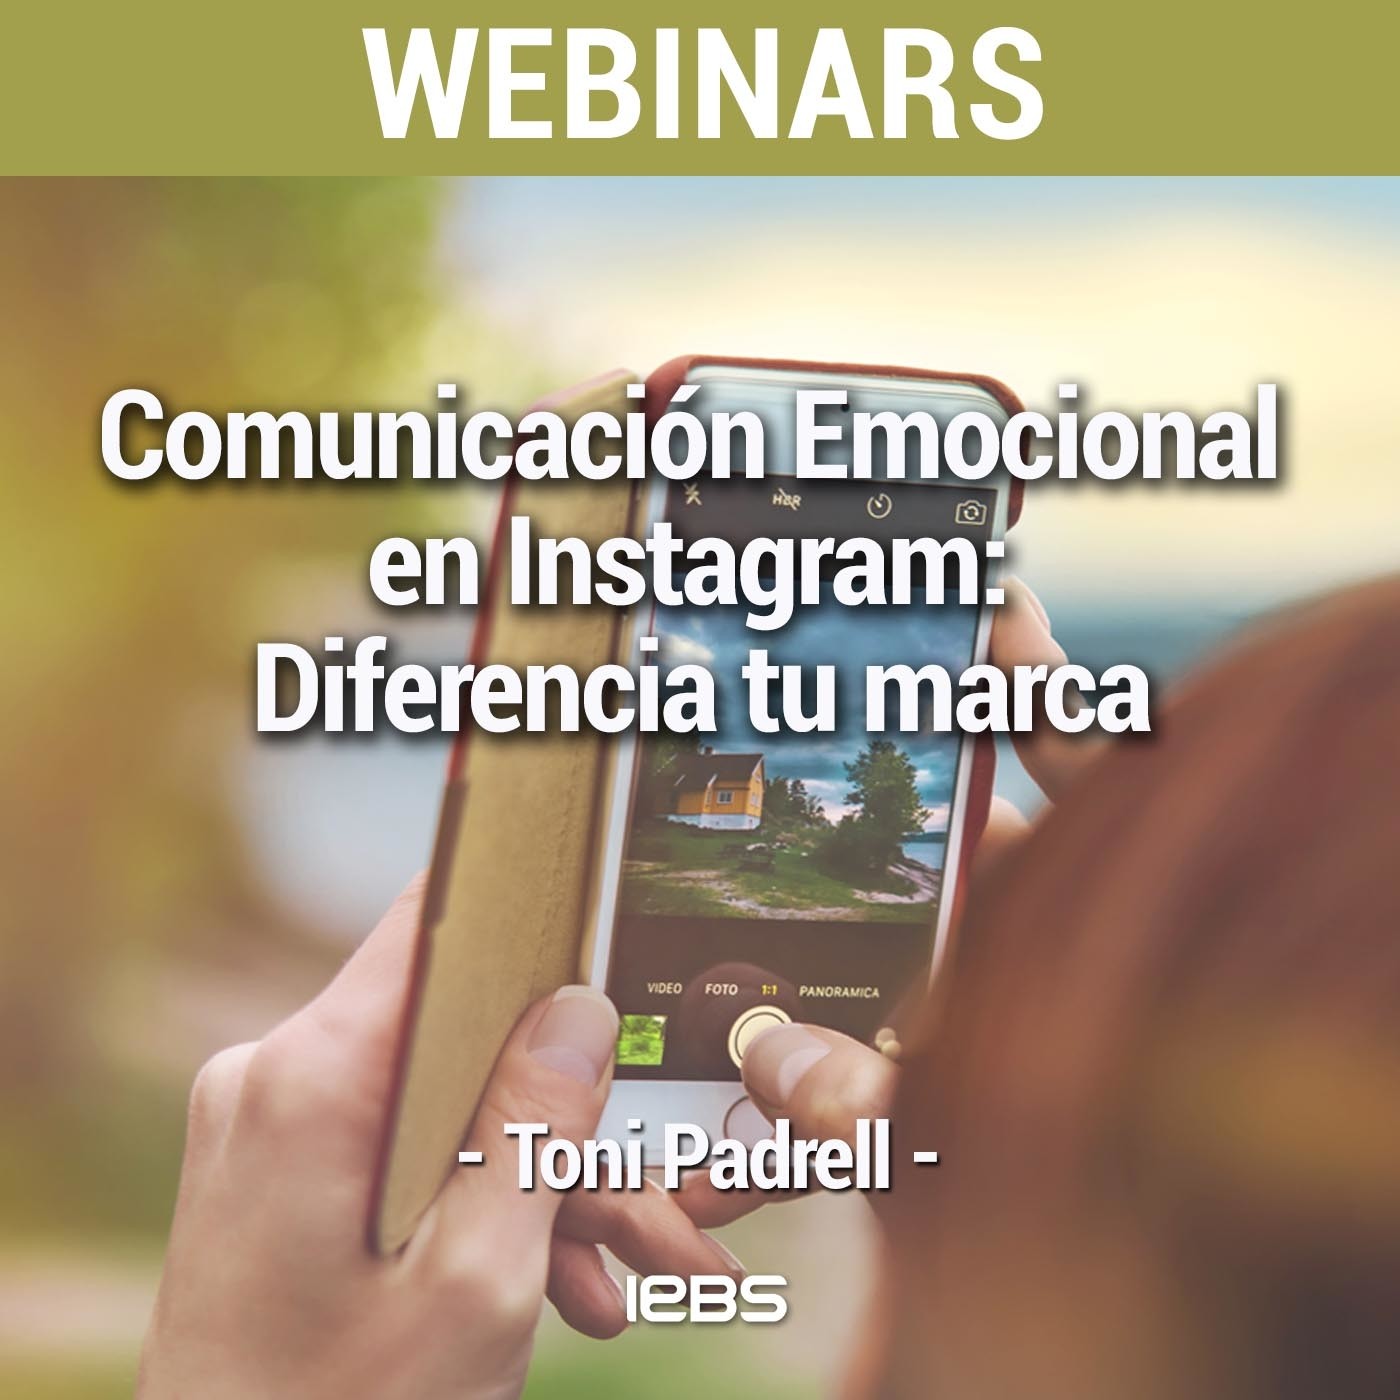 Webinar "Comunicación Emocional en Instagram: diferencia tu marca" de IEBS